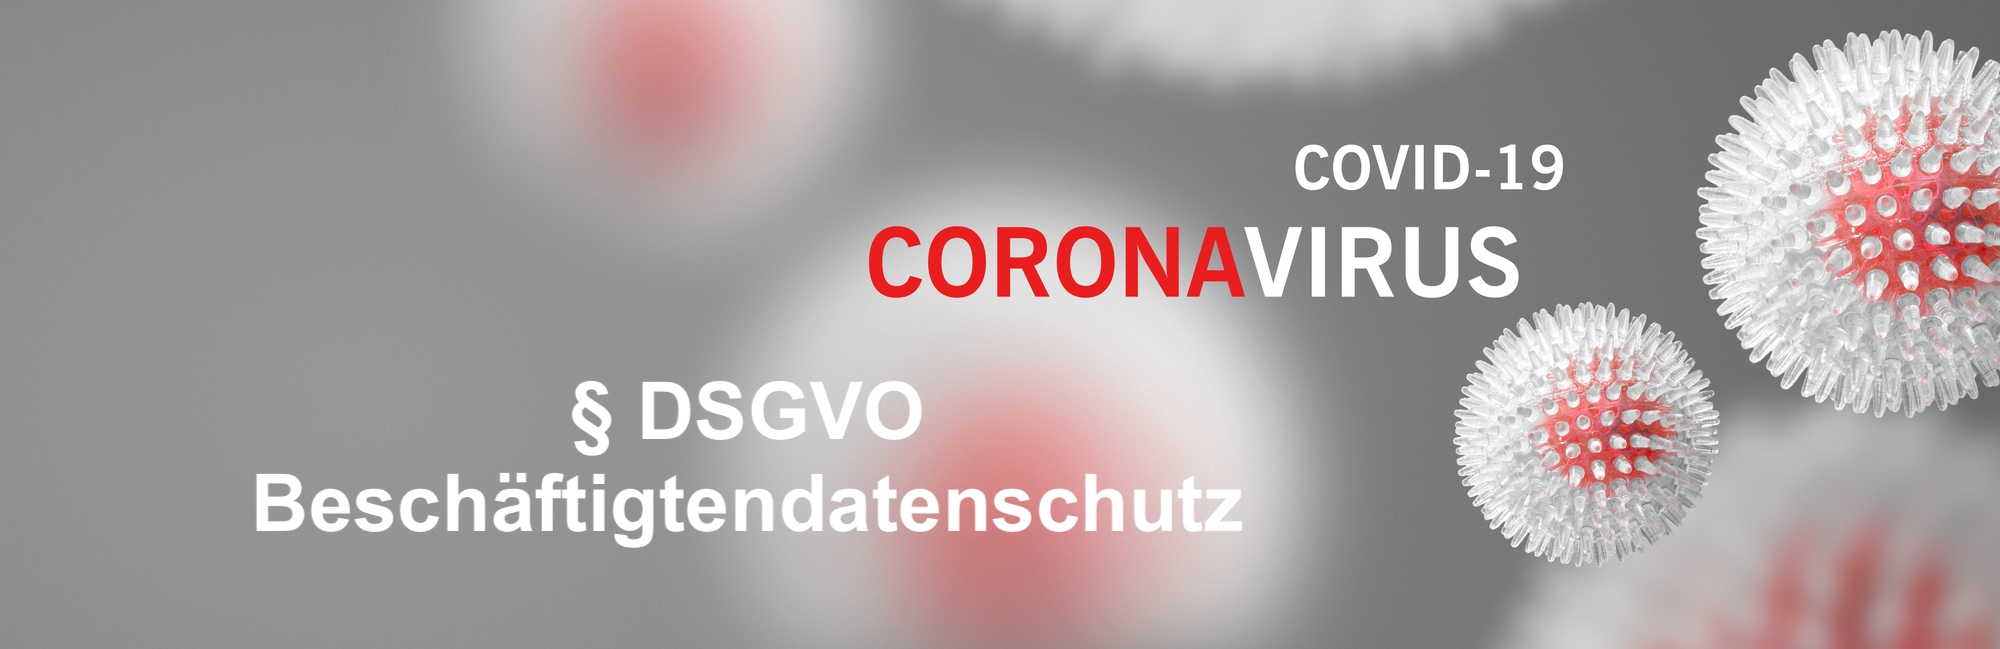 DSGVO Corona Beschäftigtendatenschutz